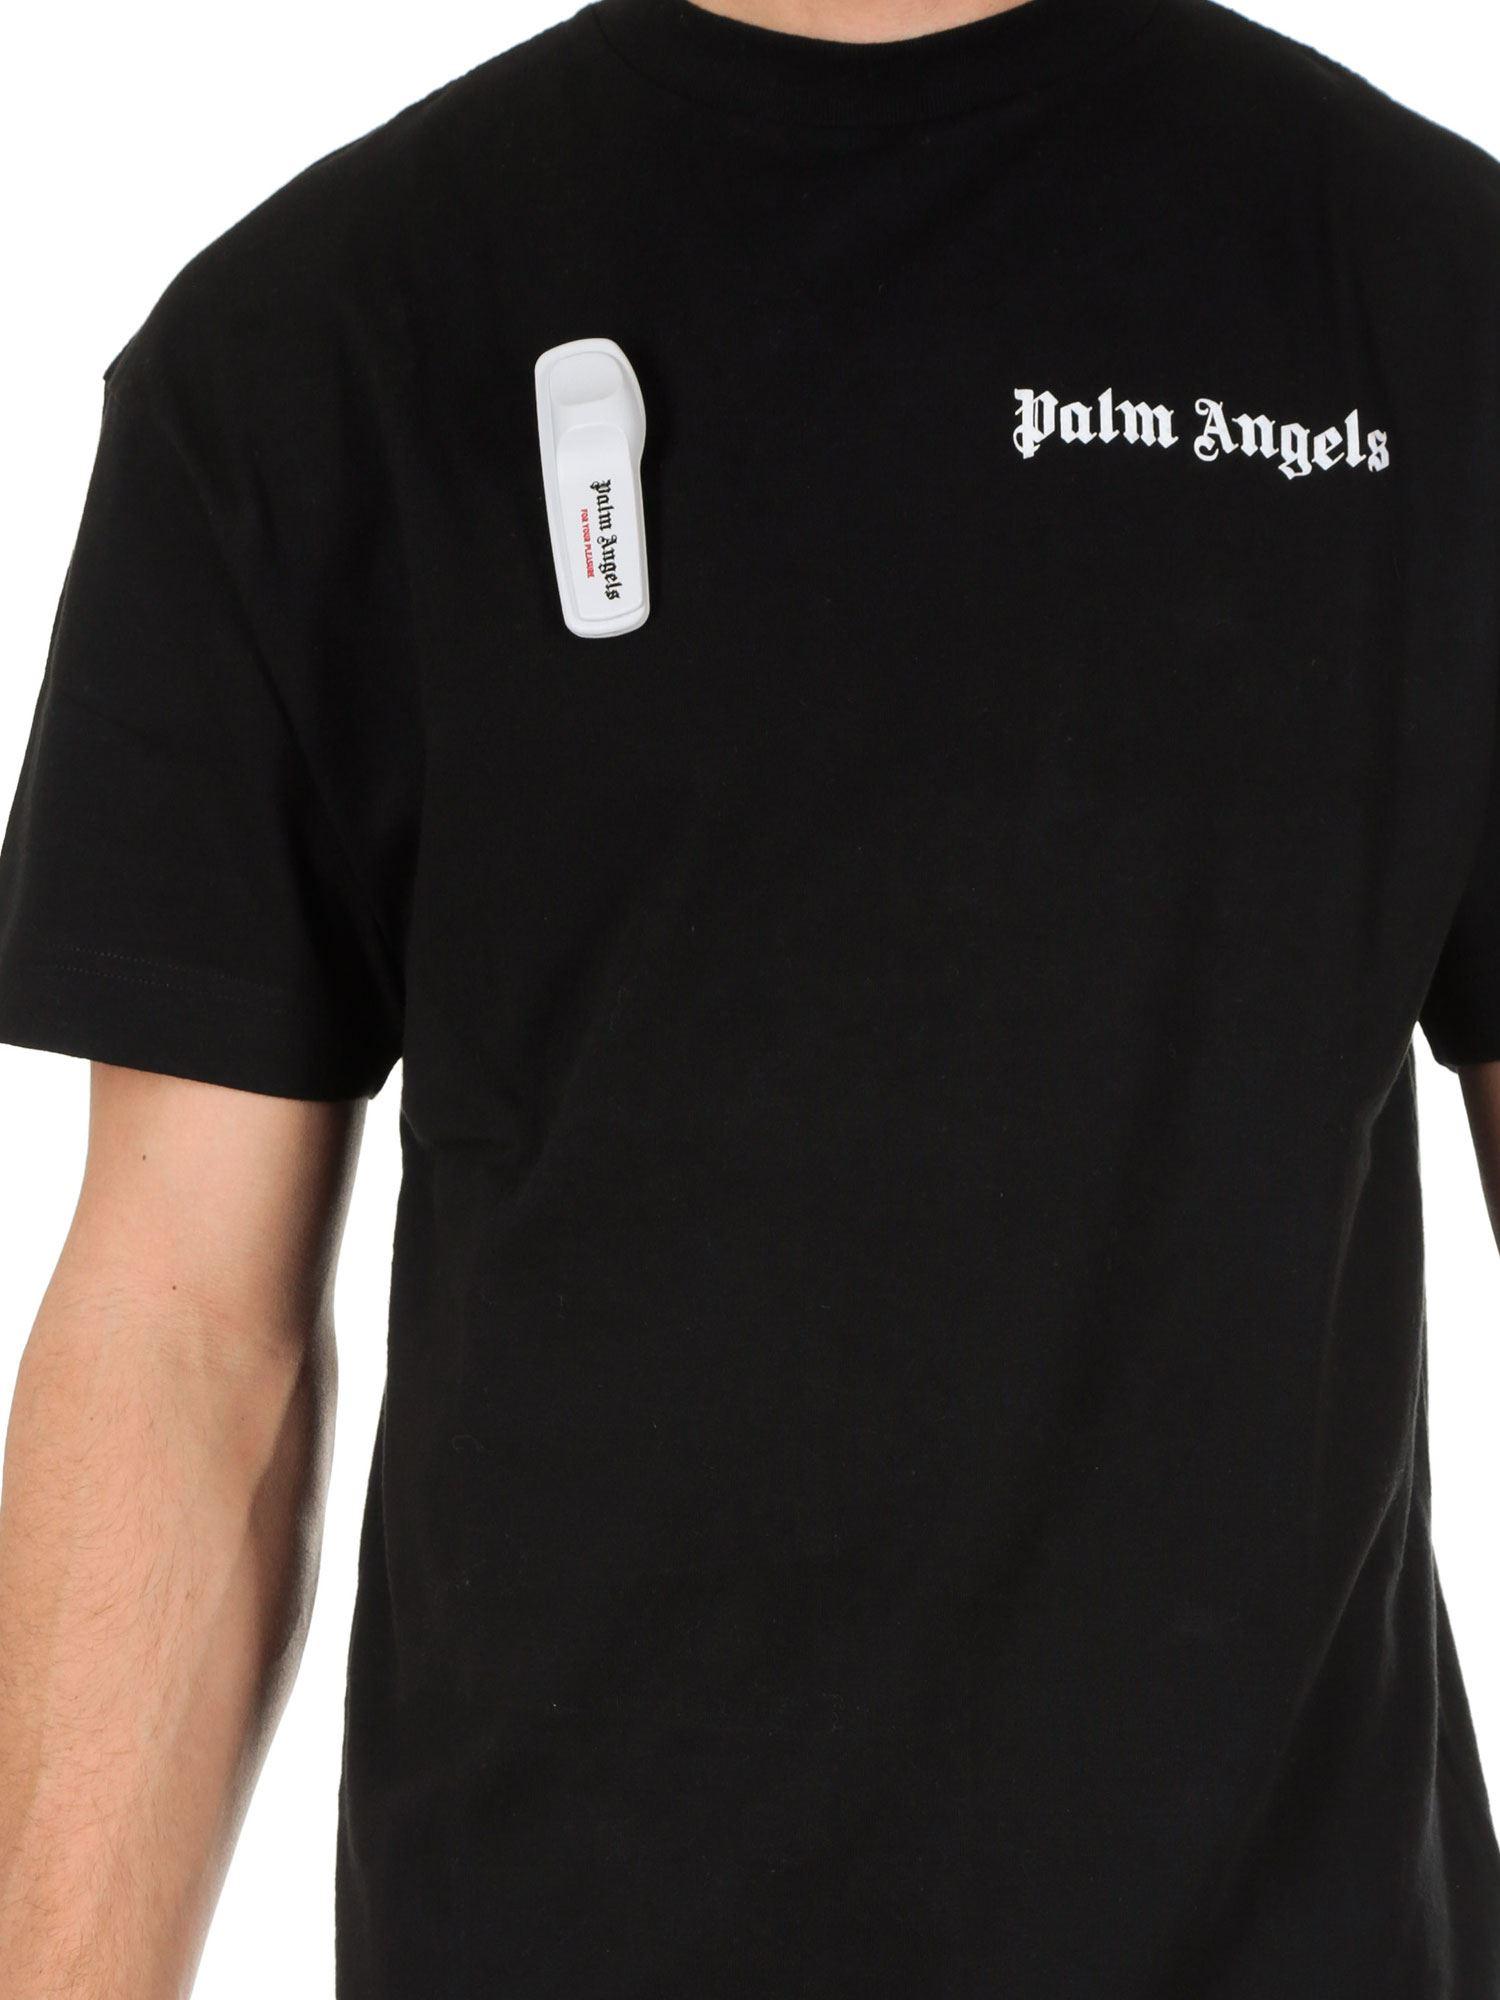 palm angels basic logo t shirt